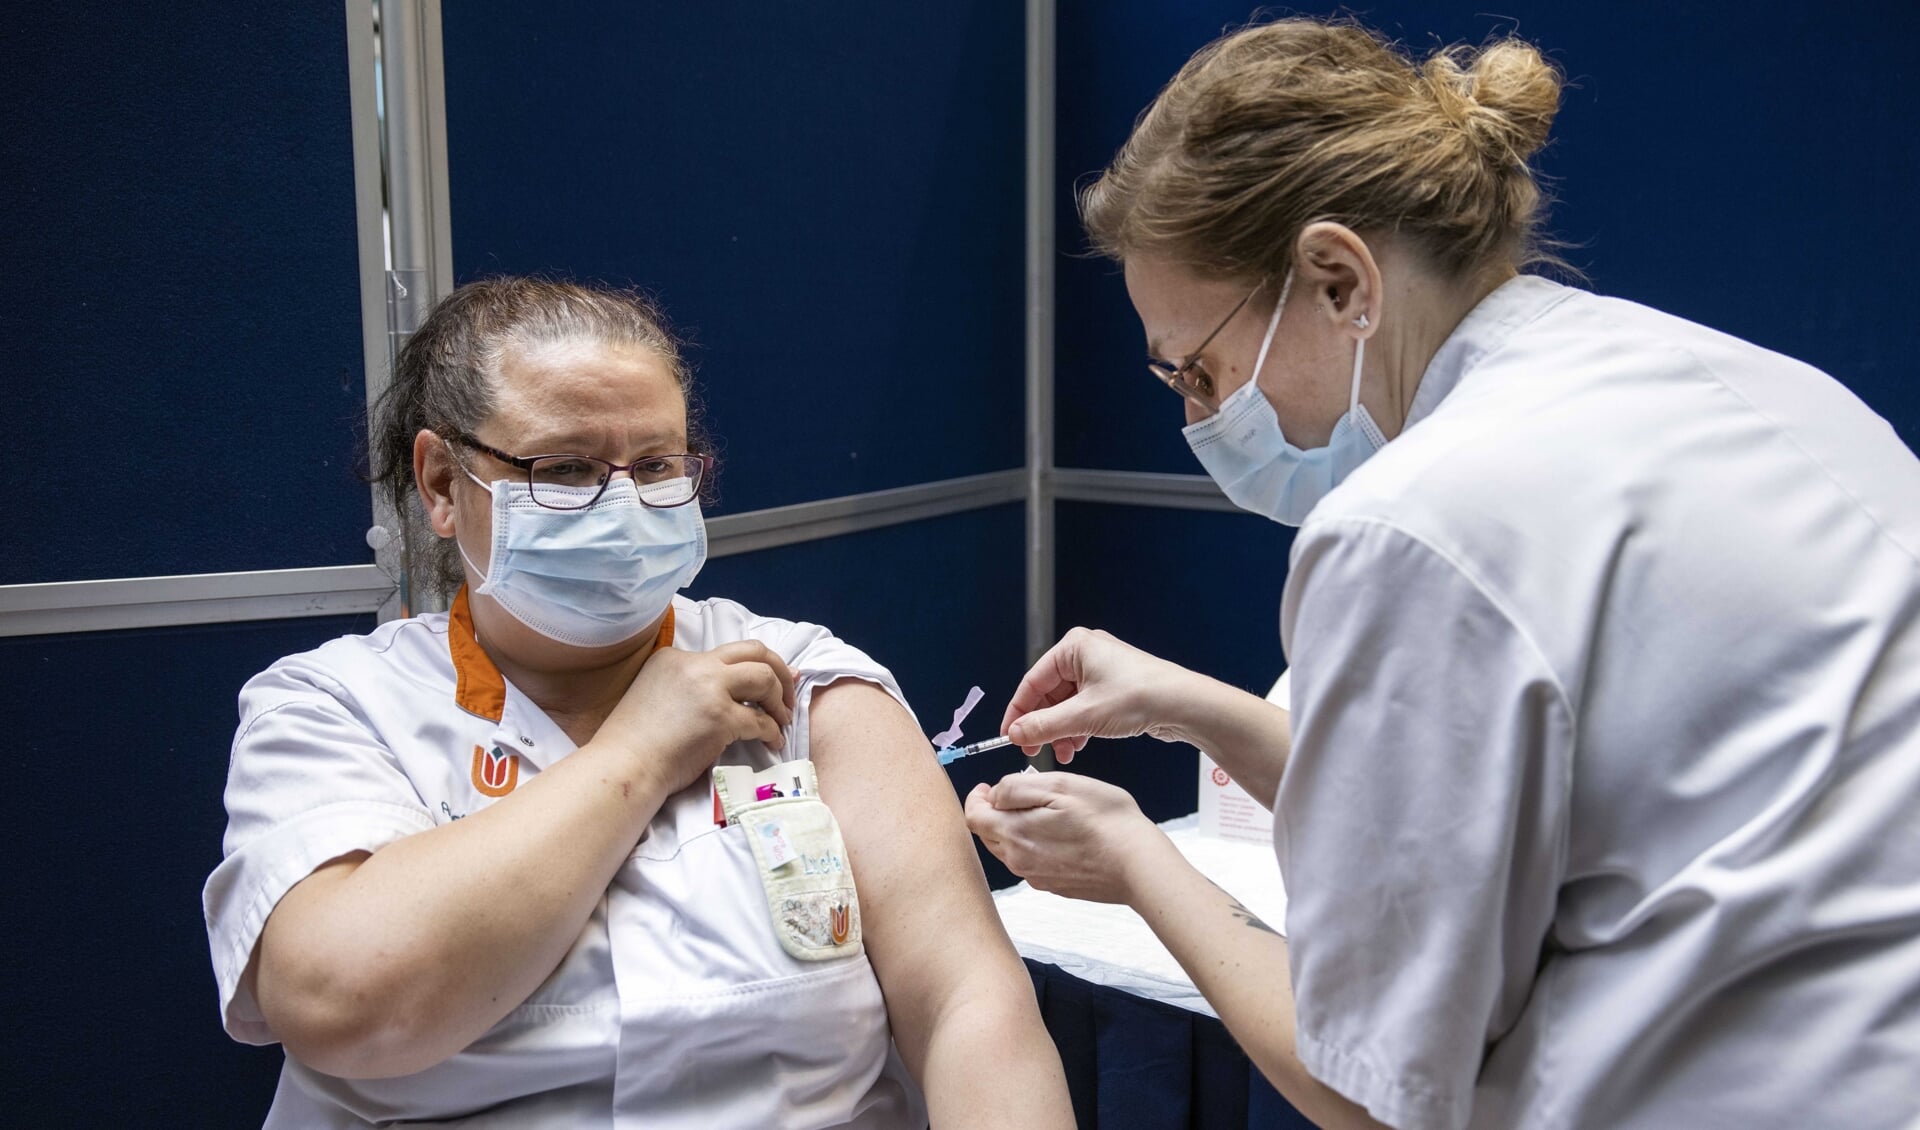 Een zorgmedewerker wordt met het Janssen-vaccin gevaccineerd tegen COVID-19. Het Janssen-vaccin zorgt, evenals het AstraZeneca-vaccin, mogelijk voor bijwerkingen. 